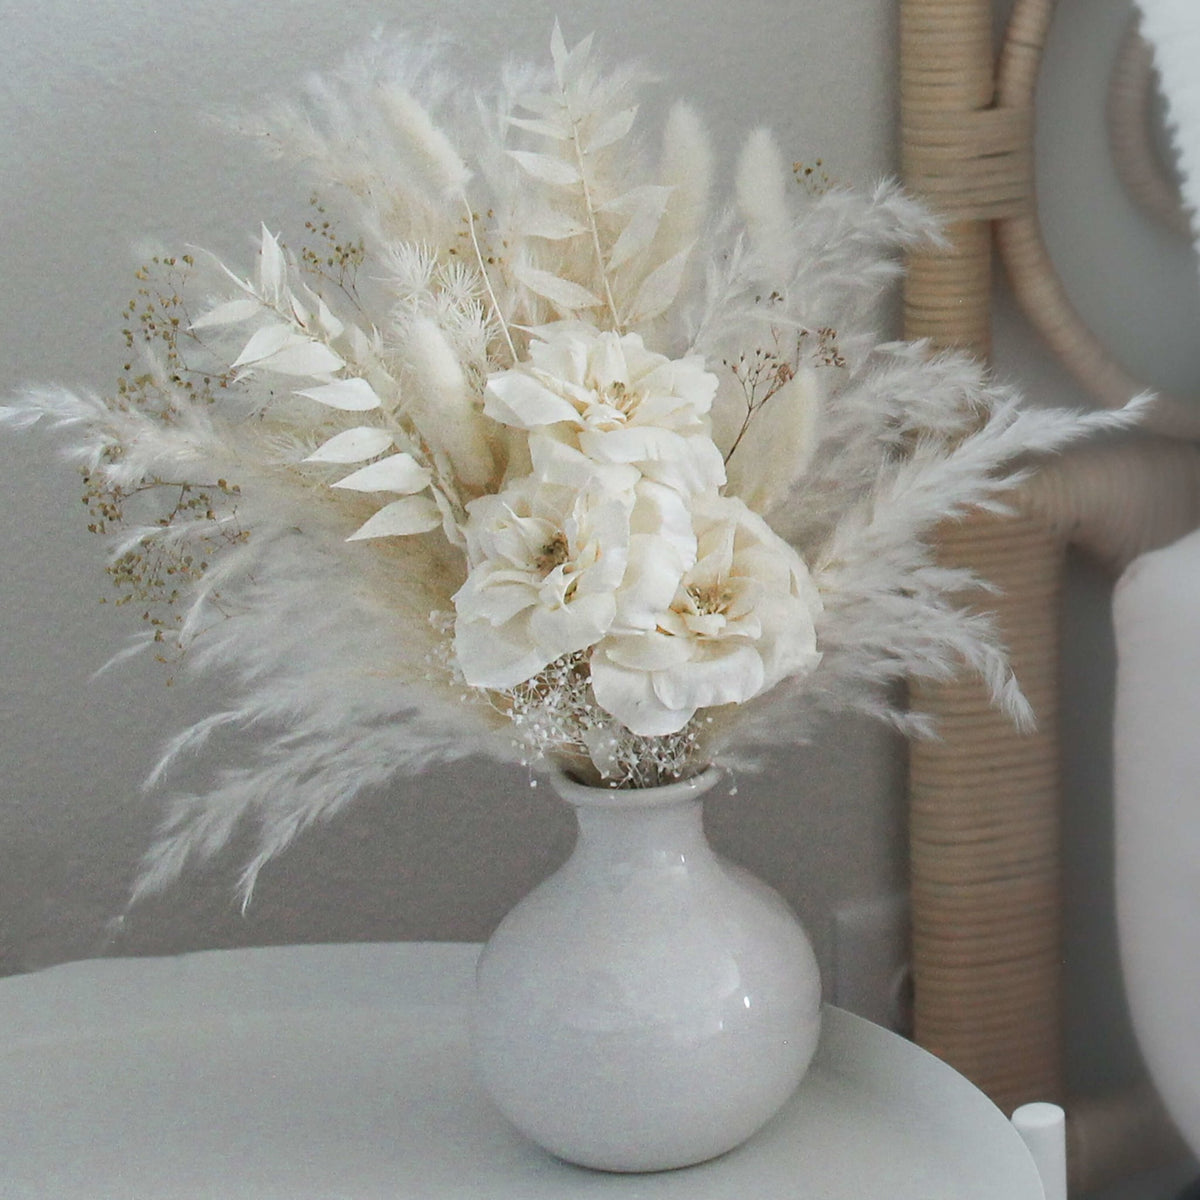 Blooming In Heaven Memorial Bouquet - Due To Joy